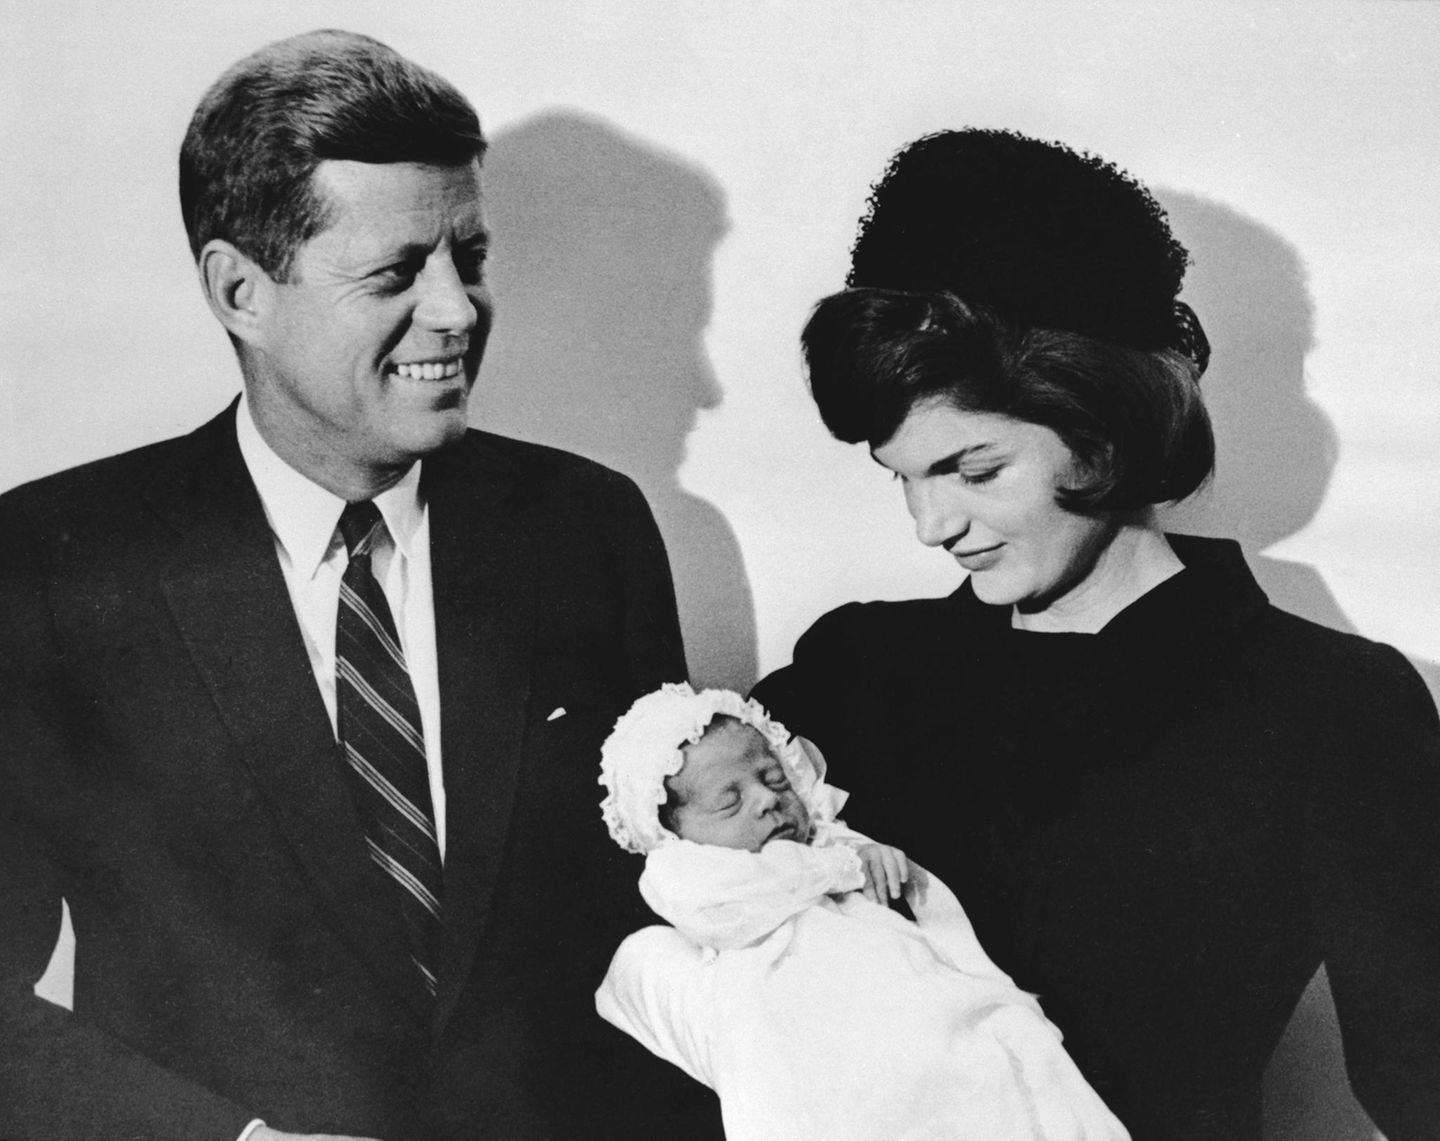 Am 25. November 1960 kommt John F. Kennedy jr. als drittes Kind von John F. Kennedy und dessen Ehefrau Jacqueline "Jackie" Kennedy, geborene Bouvier, zur Welt. Seine älteste Schwester Arabella wurde vier Jahre zuvor tot geboren. Sein jüngerer Bruder Patrick starb zwei Tage nach seiner Geburt. Heute lebt nur noch Johns ältere Schwester Caroline Kennedy, die 1957 geboren wurde.